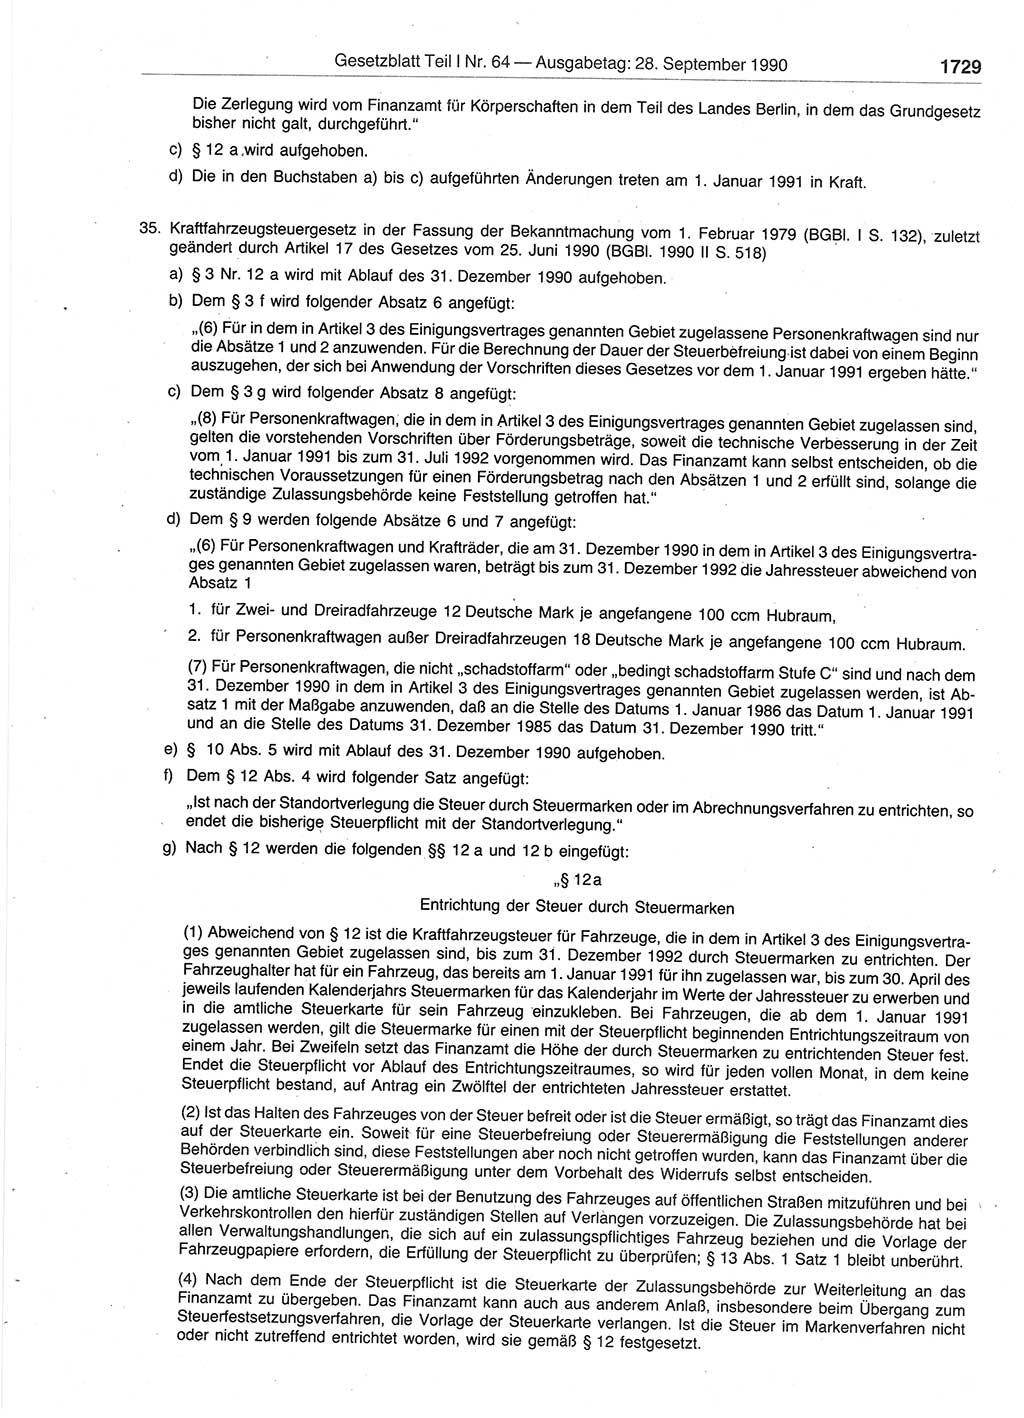 Gesetzblatt (GBl.) der Deutschen Demokratischen Republik (DDR) Teil Ⅰ 1990, Seite 1729 (GBl. DDR Ⅰ 1990, S. 1729)